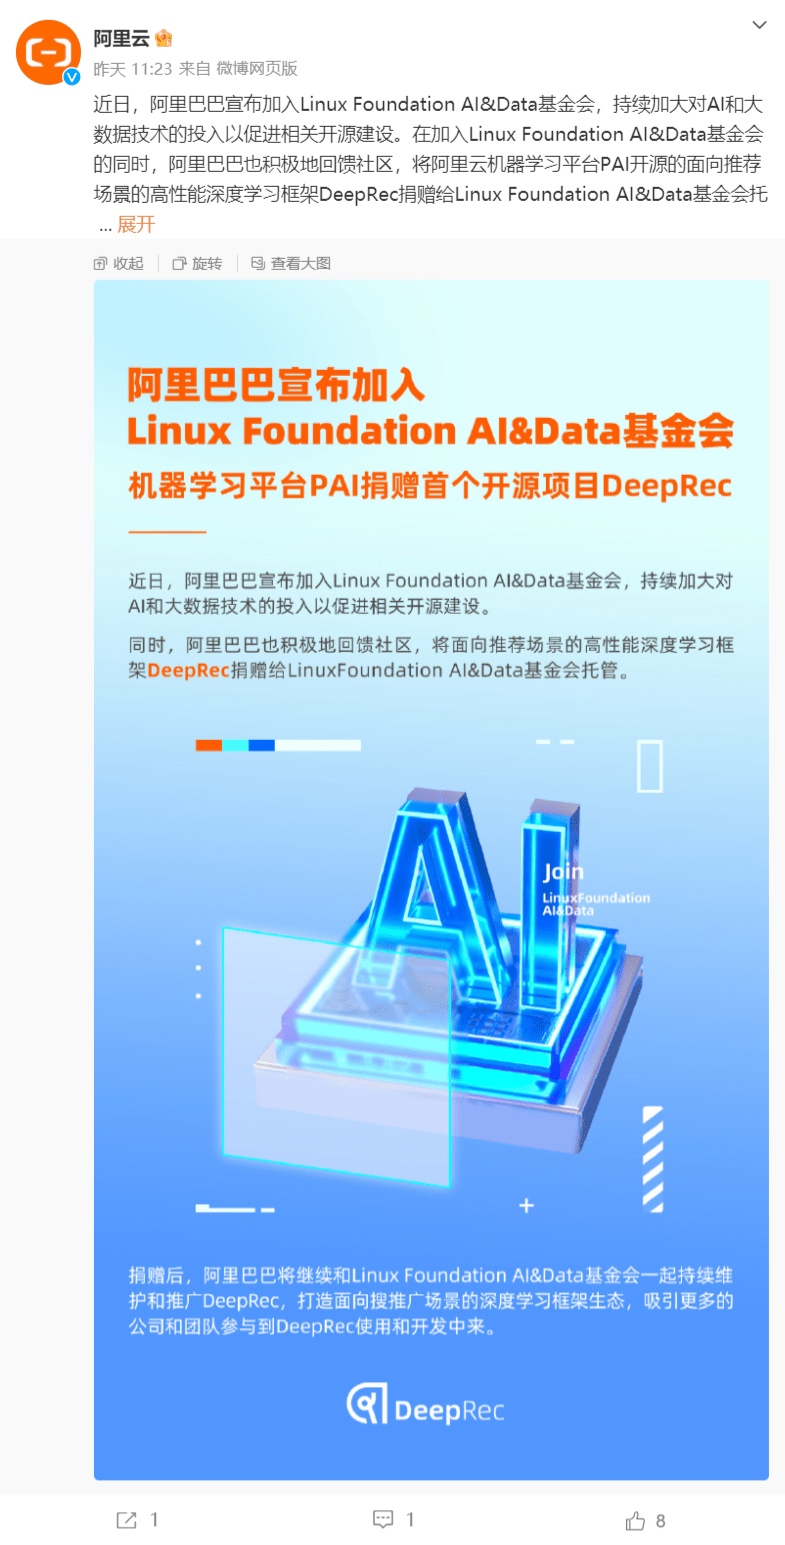 阿里宣布加入Linux Foundation AI&Data基金会 加大对AI和大数据技术的投入